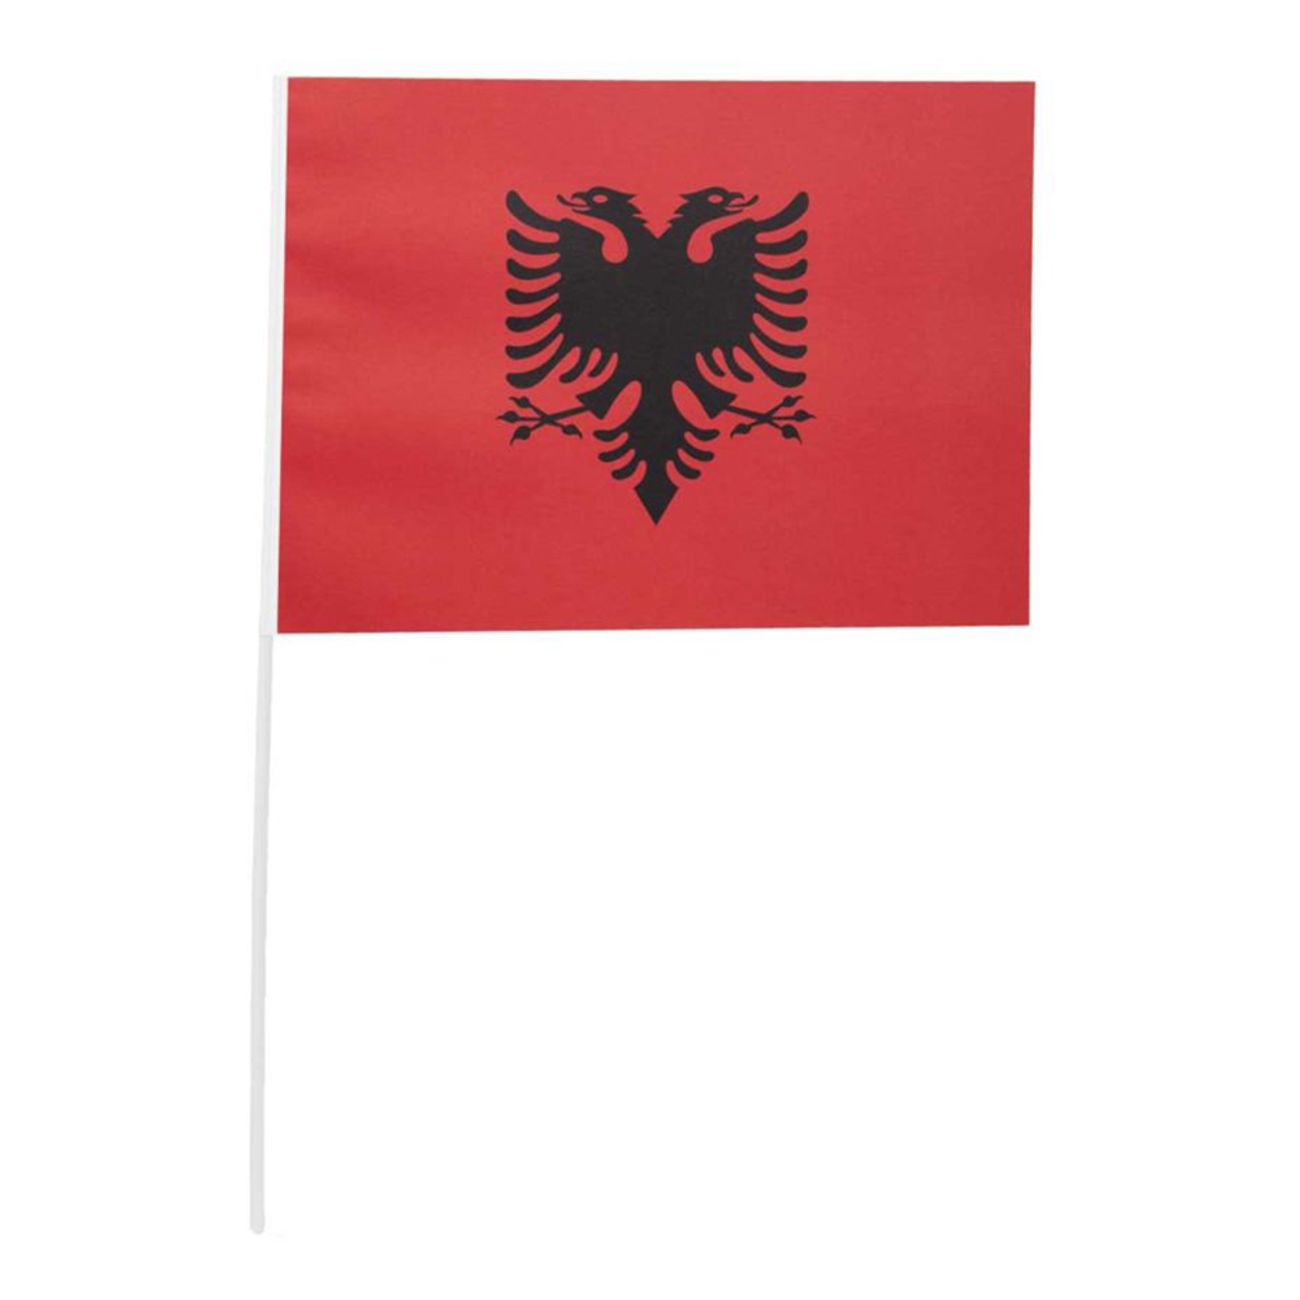 pappersflagga-albanien-81473-2